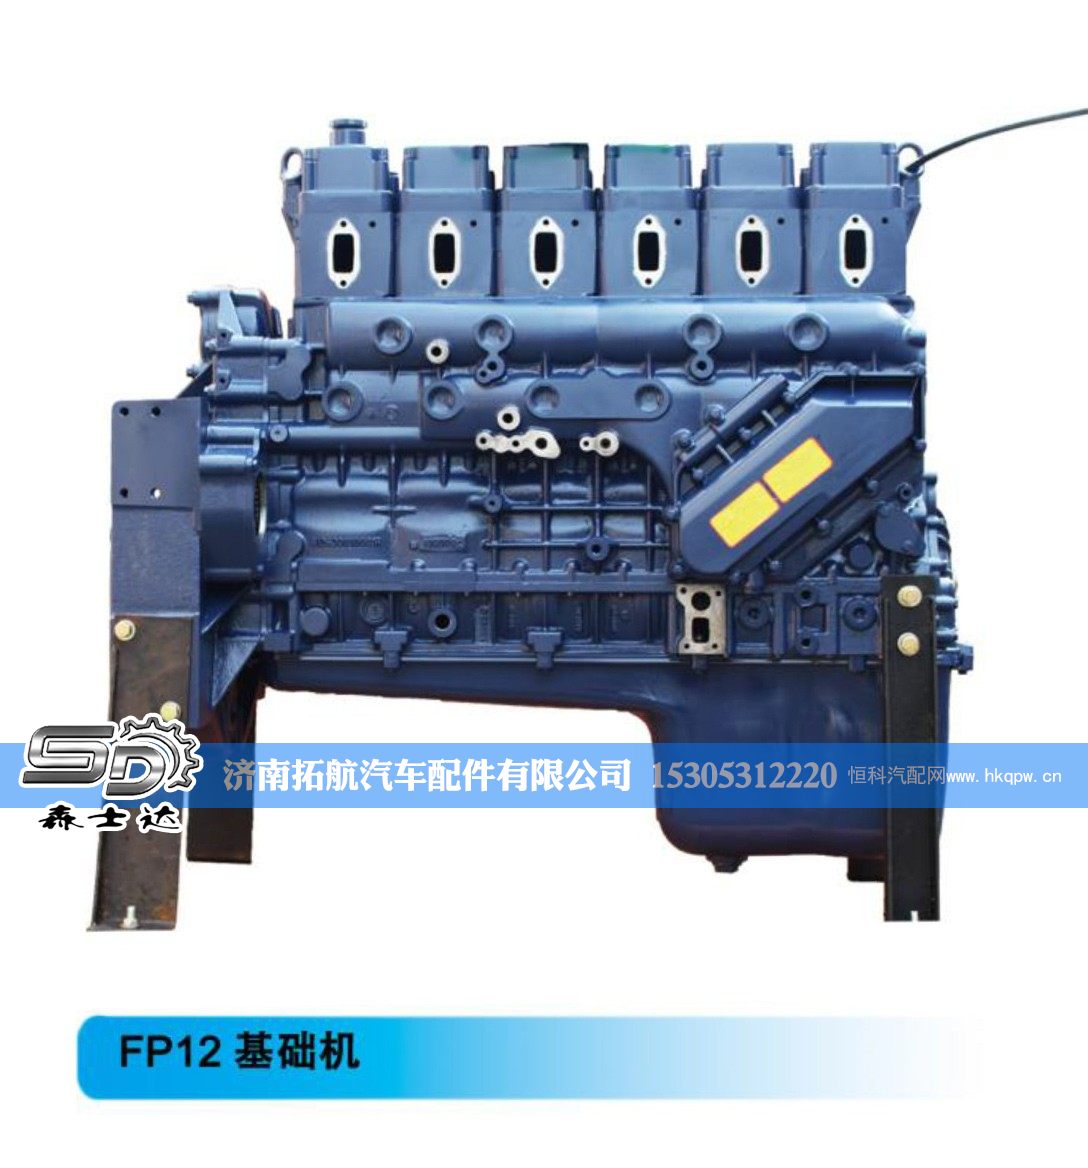 潍柴系列柴油发动机--FP12基础机【森士达】/